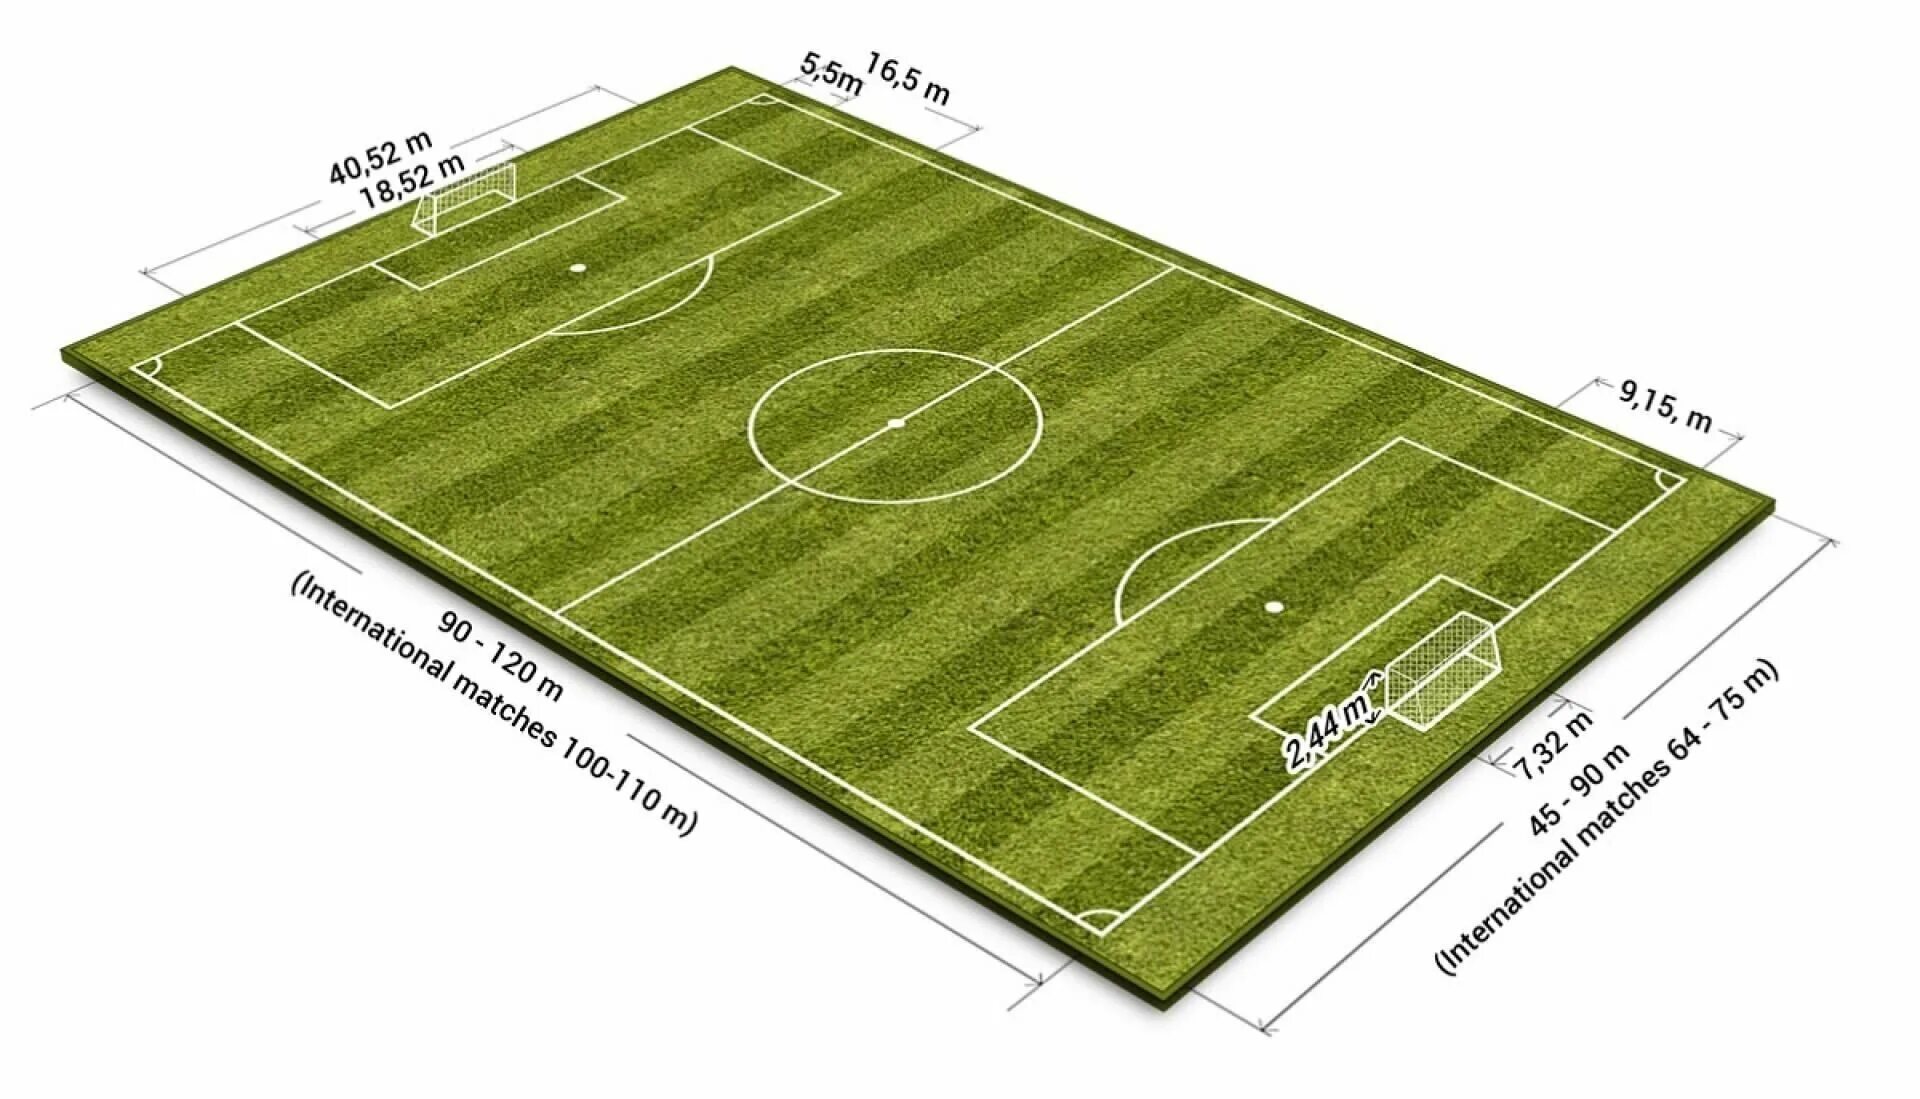 Стадион стандарт. Площадь футбольного поля м2 стандарт. Разметка футбольного поля 68х105. Стандарт футбольного поля ФИФА. Размер футбольного поля FIFA.